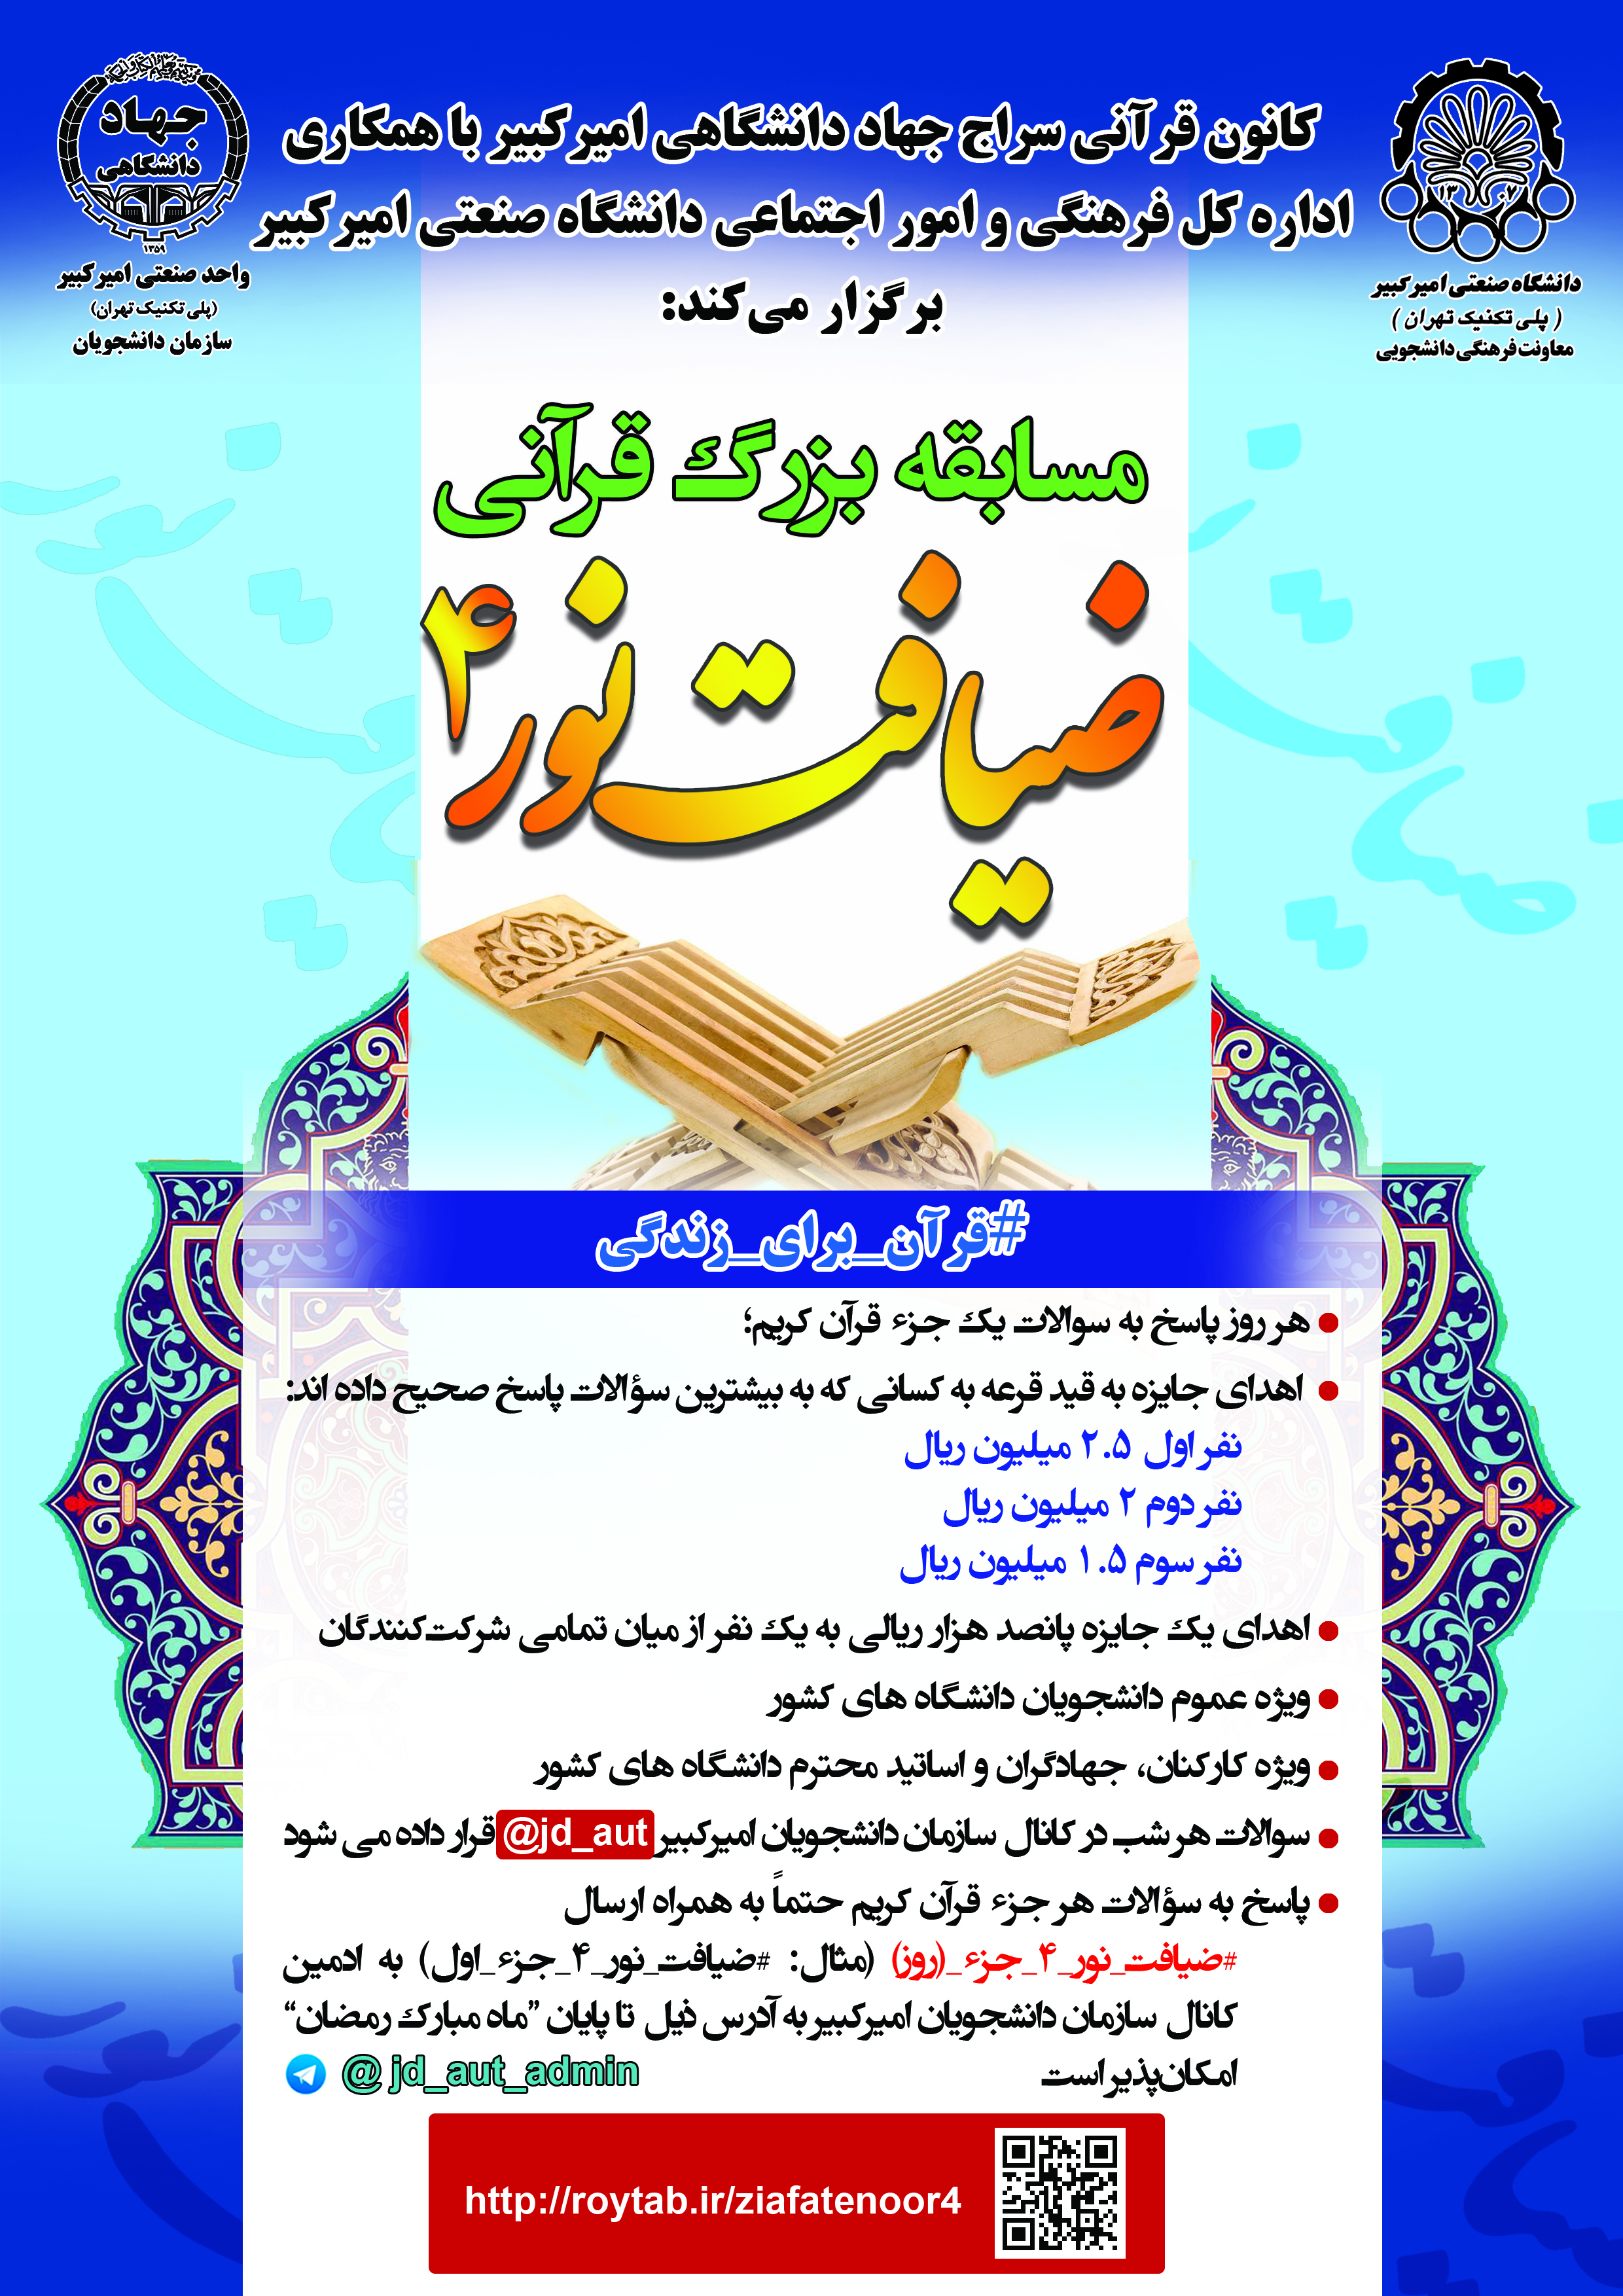 برگزاری مسابقه قرآنی «ضیافت نور4» در ماه مبارک رمضان  توسط جهاد دانشگاهی امیرکبیر